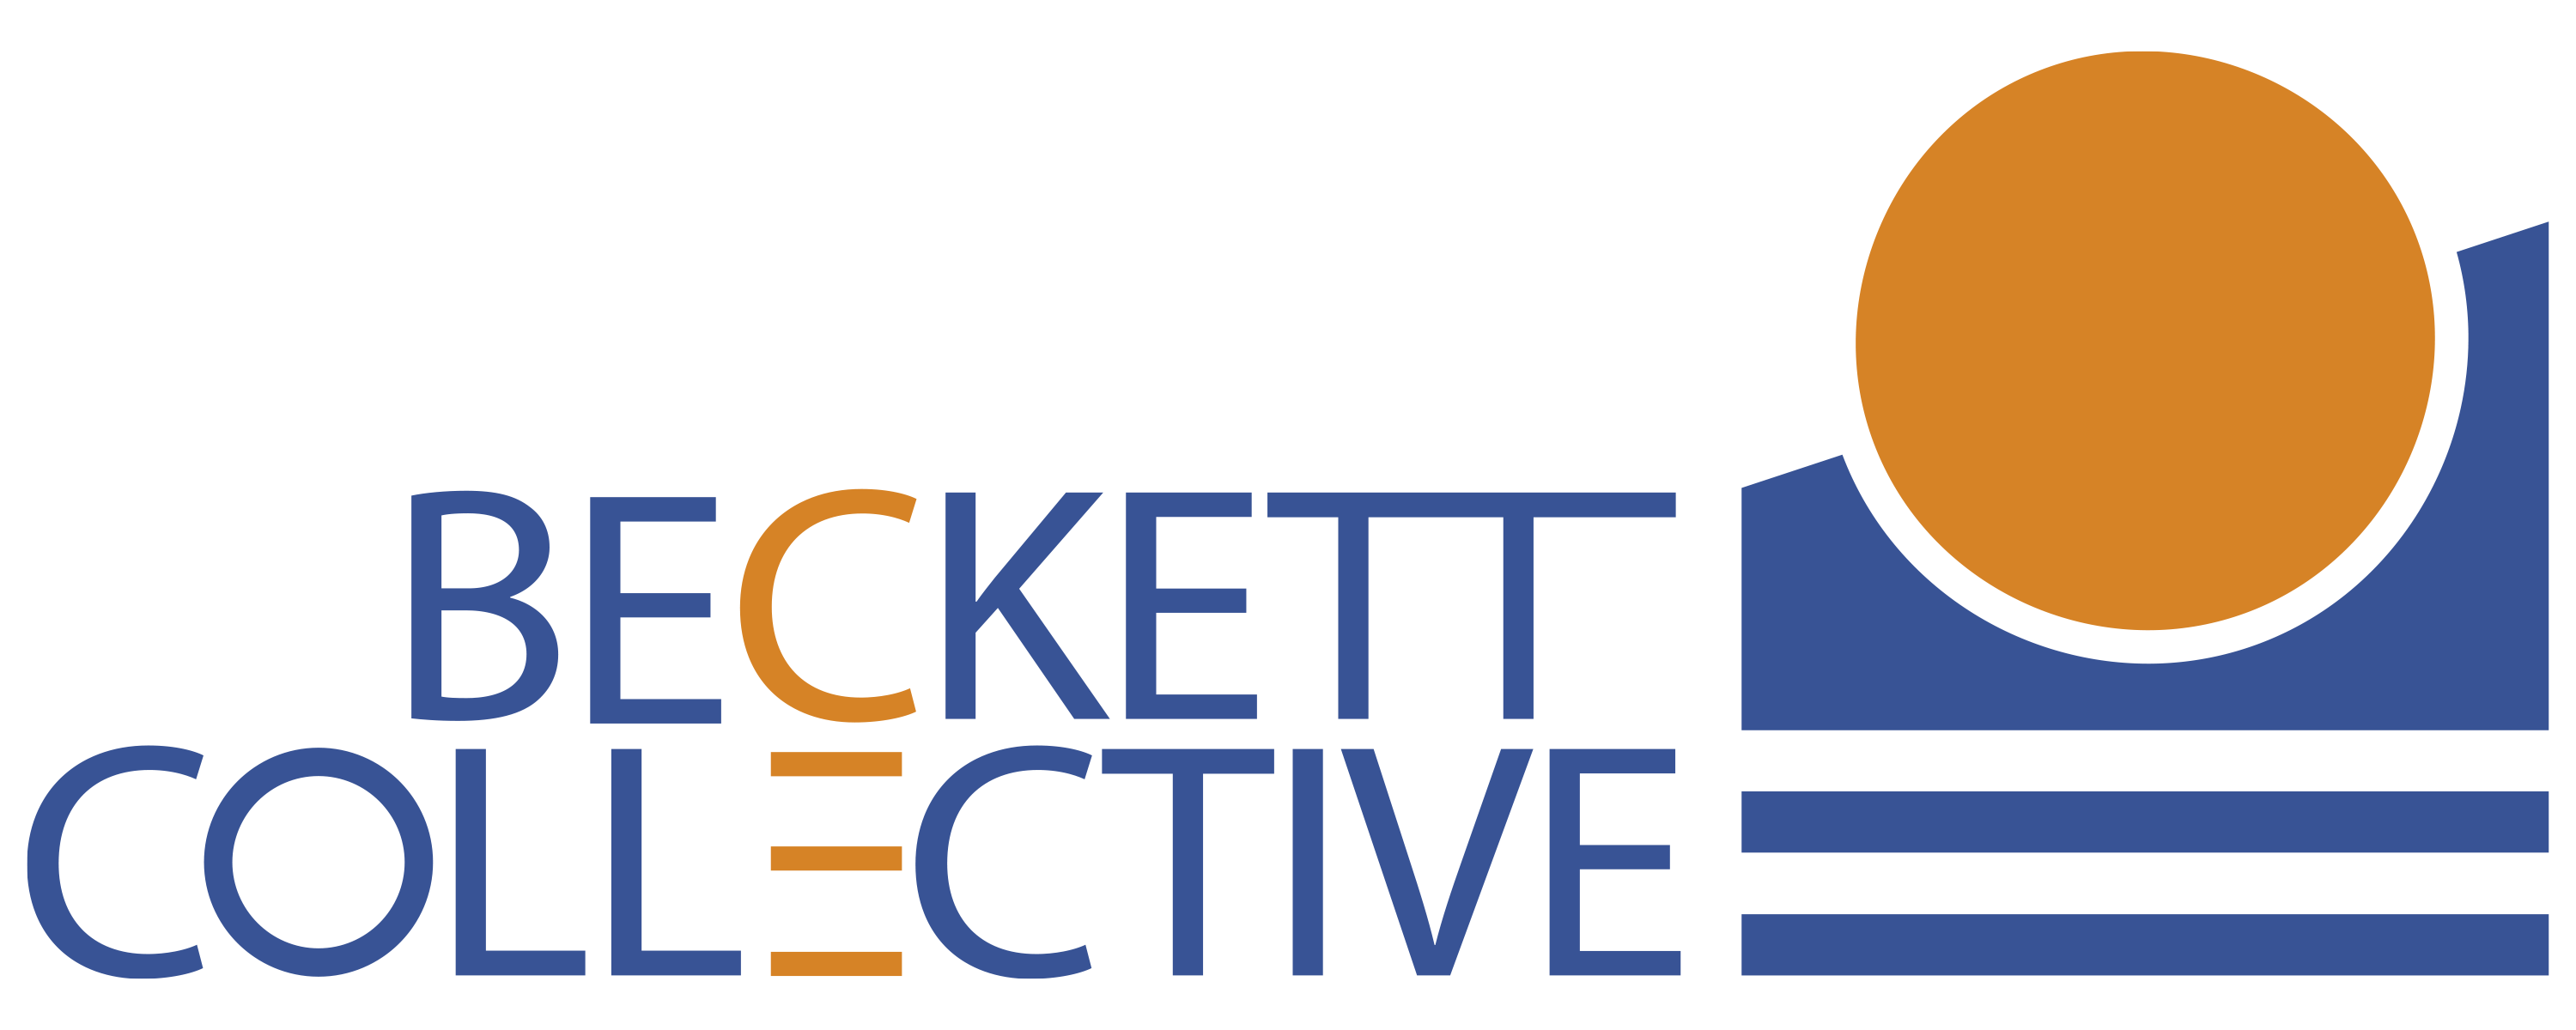 Beckett Collective logo